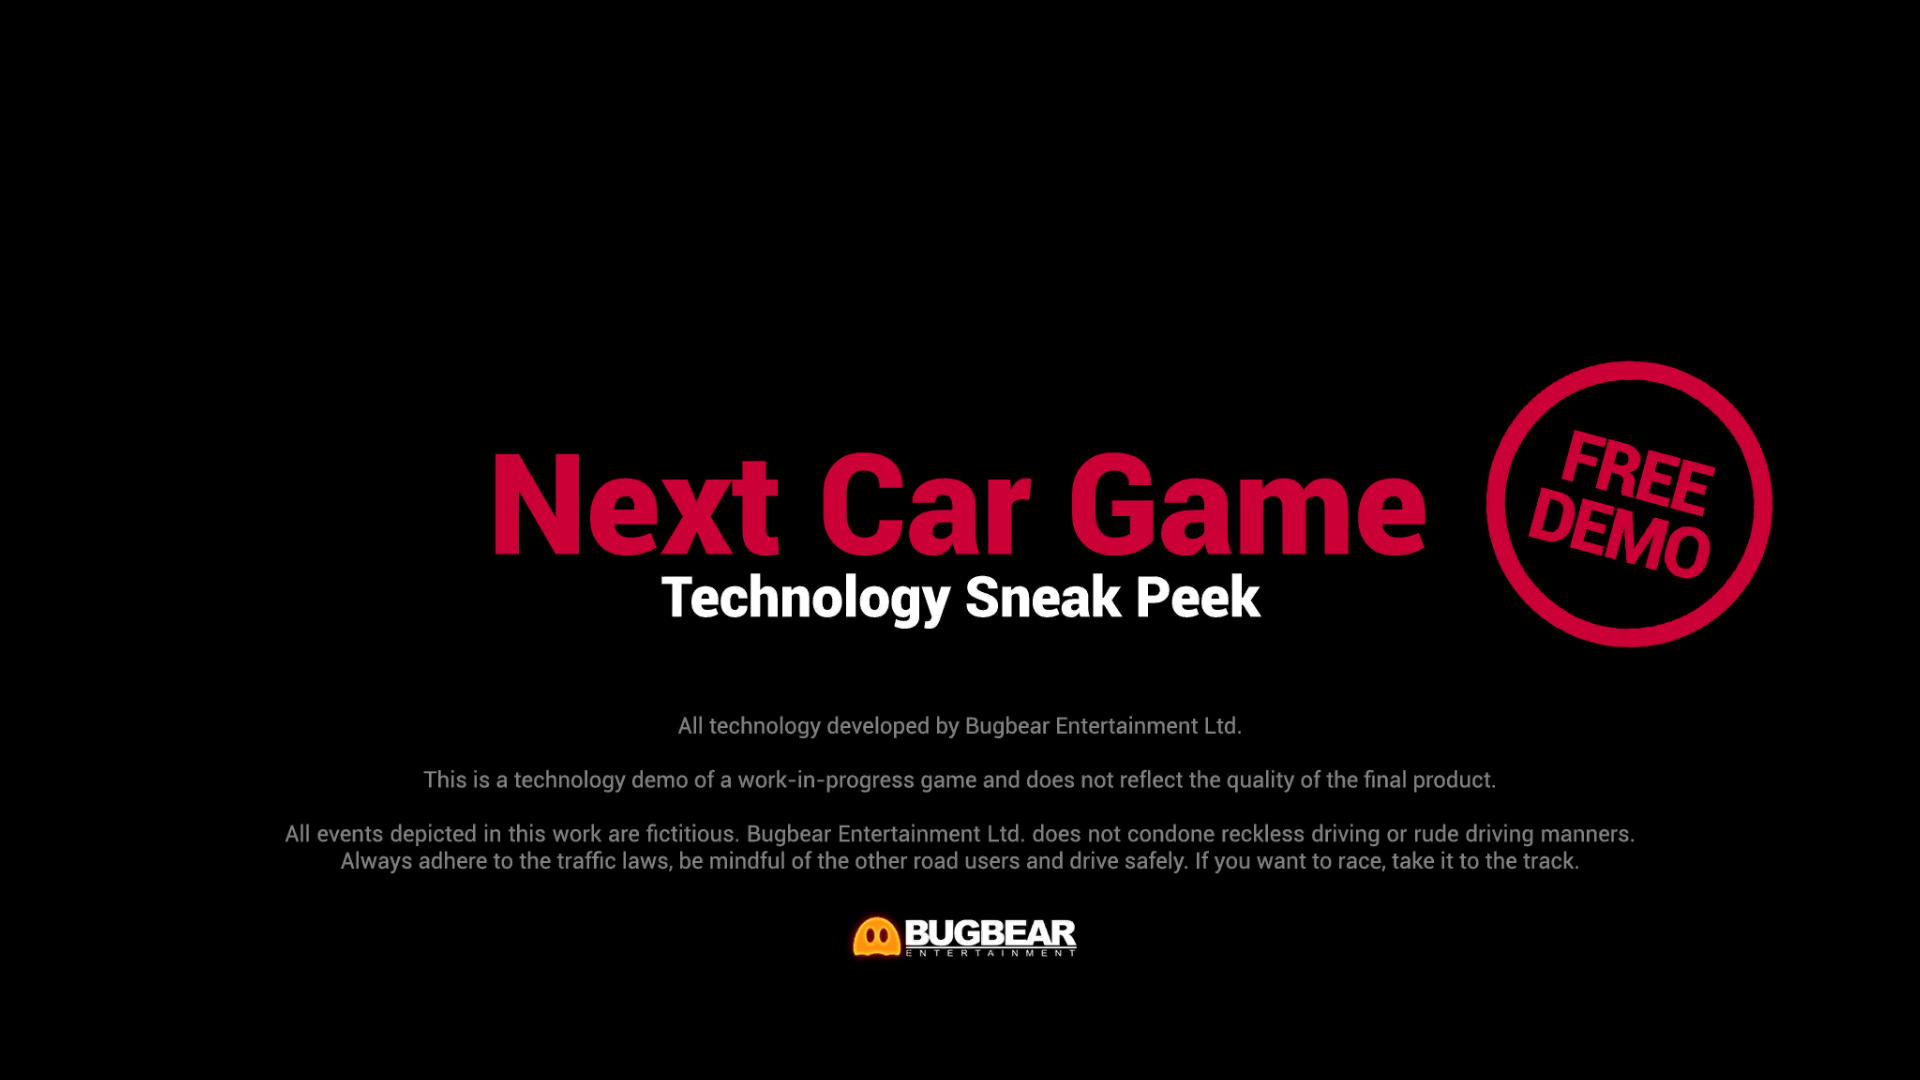 next car game tech demo 2.0 free